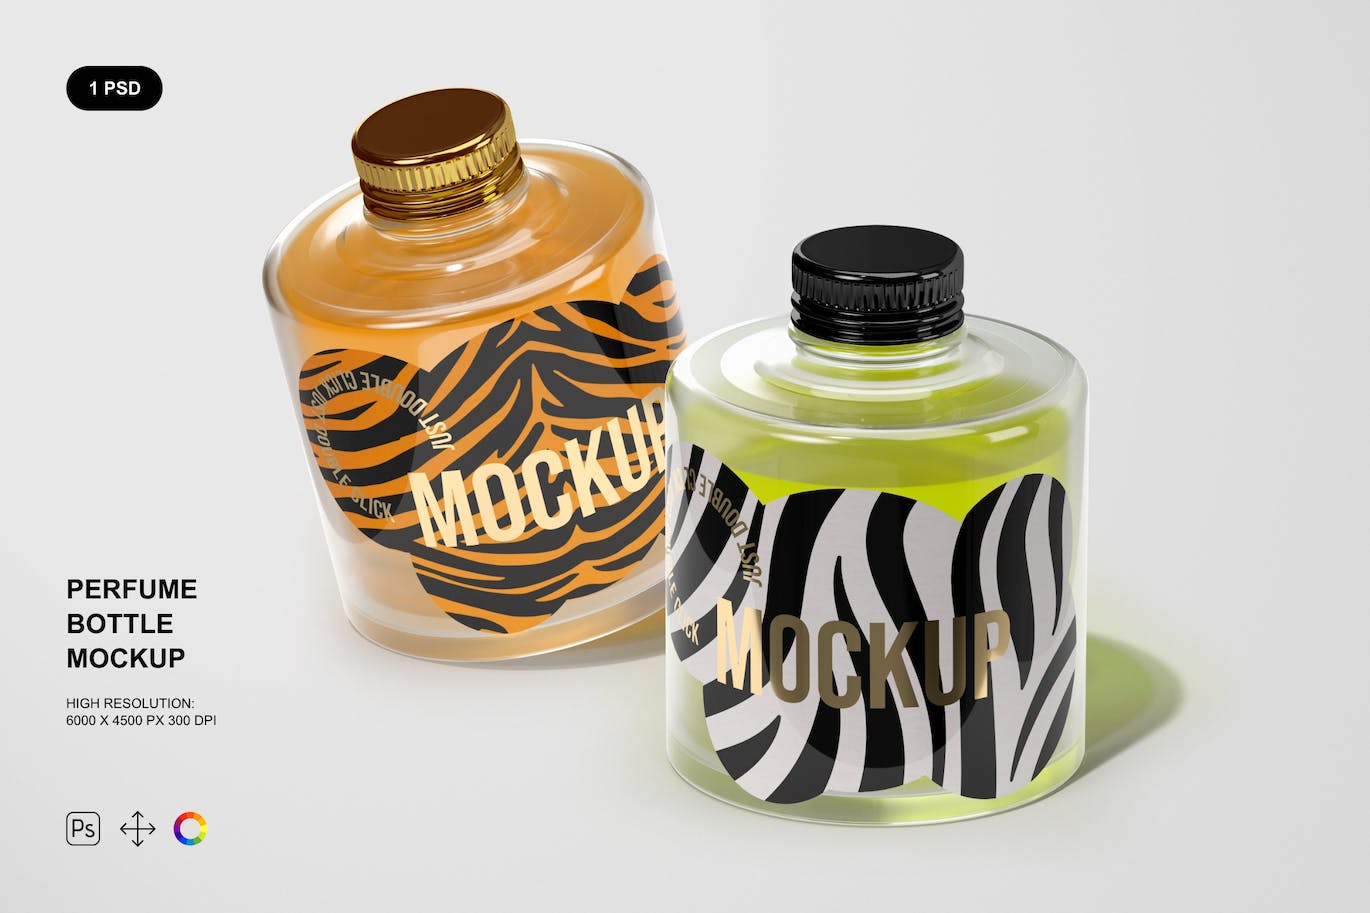 香水玻璃瓶品牌包装样机 Perfume Bottle Mockup 样机素材 第1张